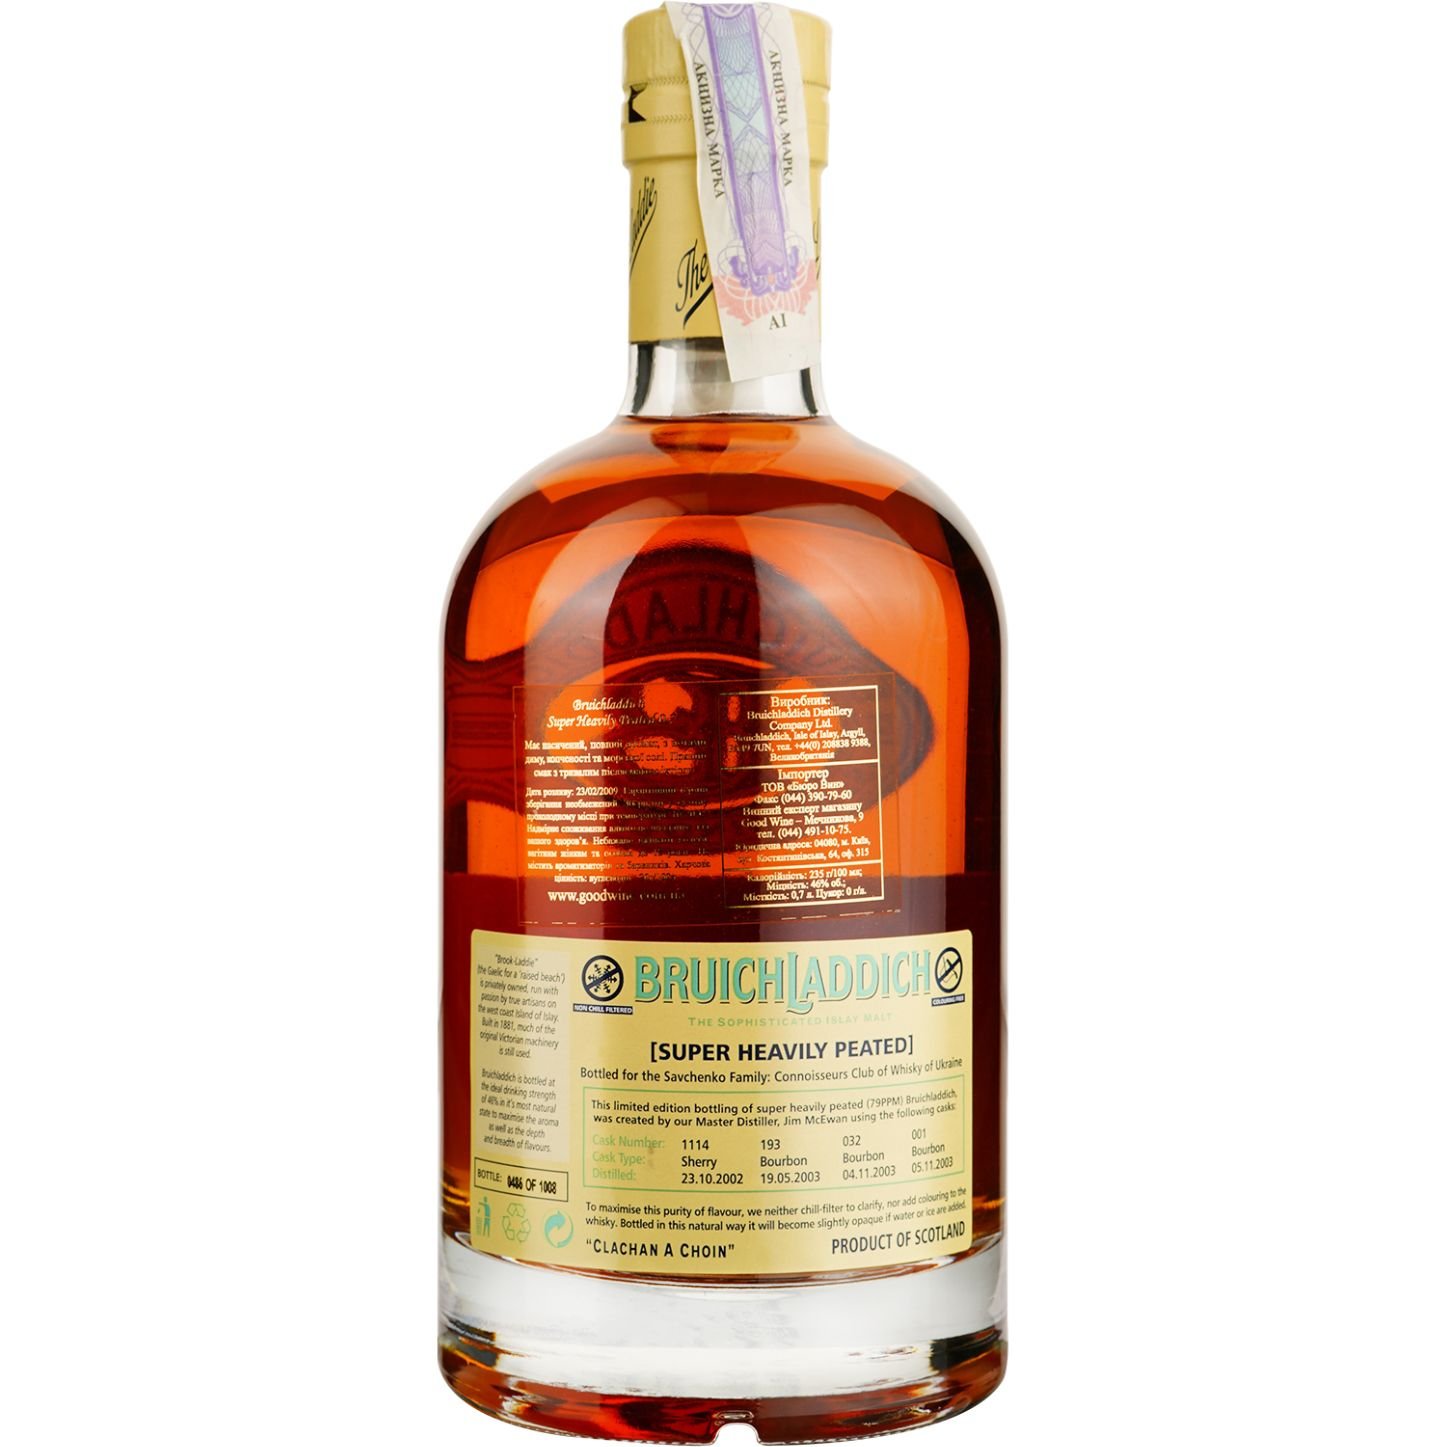 Виски Bruichladdich Super Heavily Peated Single Malt Scotch Whisky, в подарочной упаковке, 46%, 0,7 л - фото 4